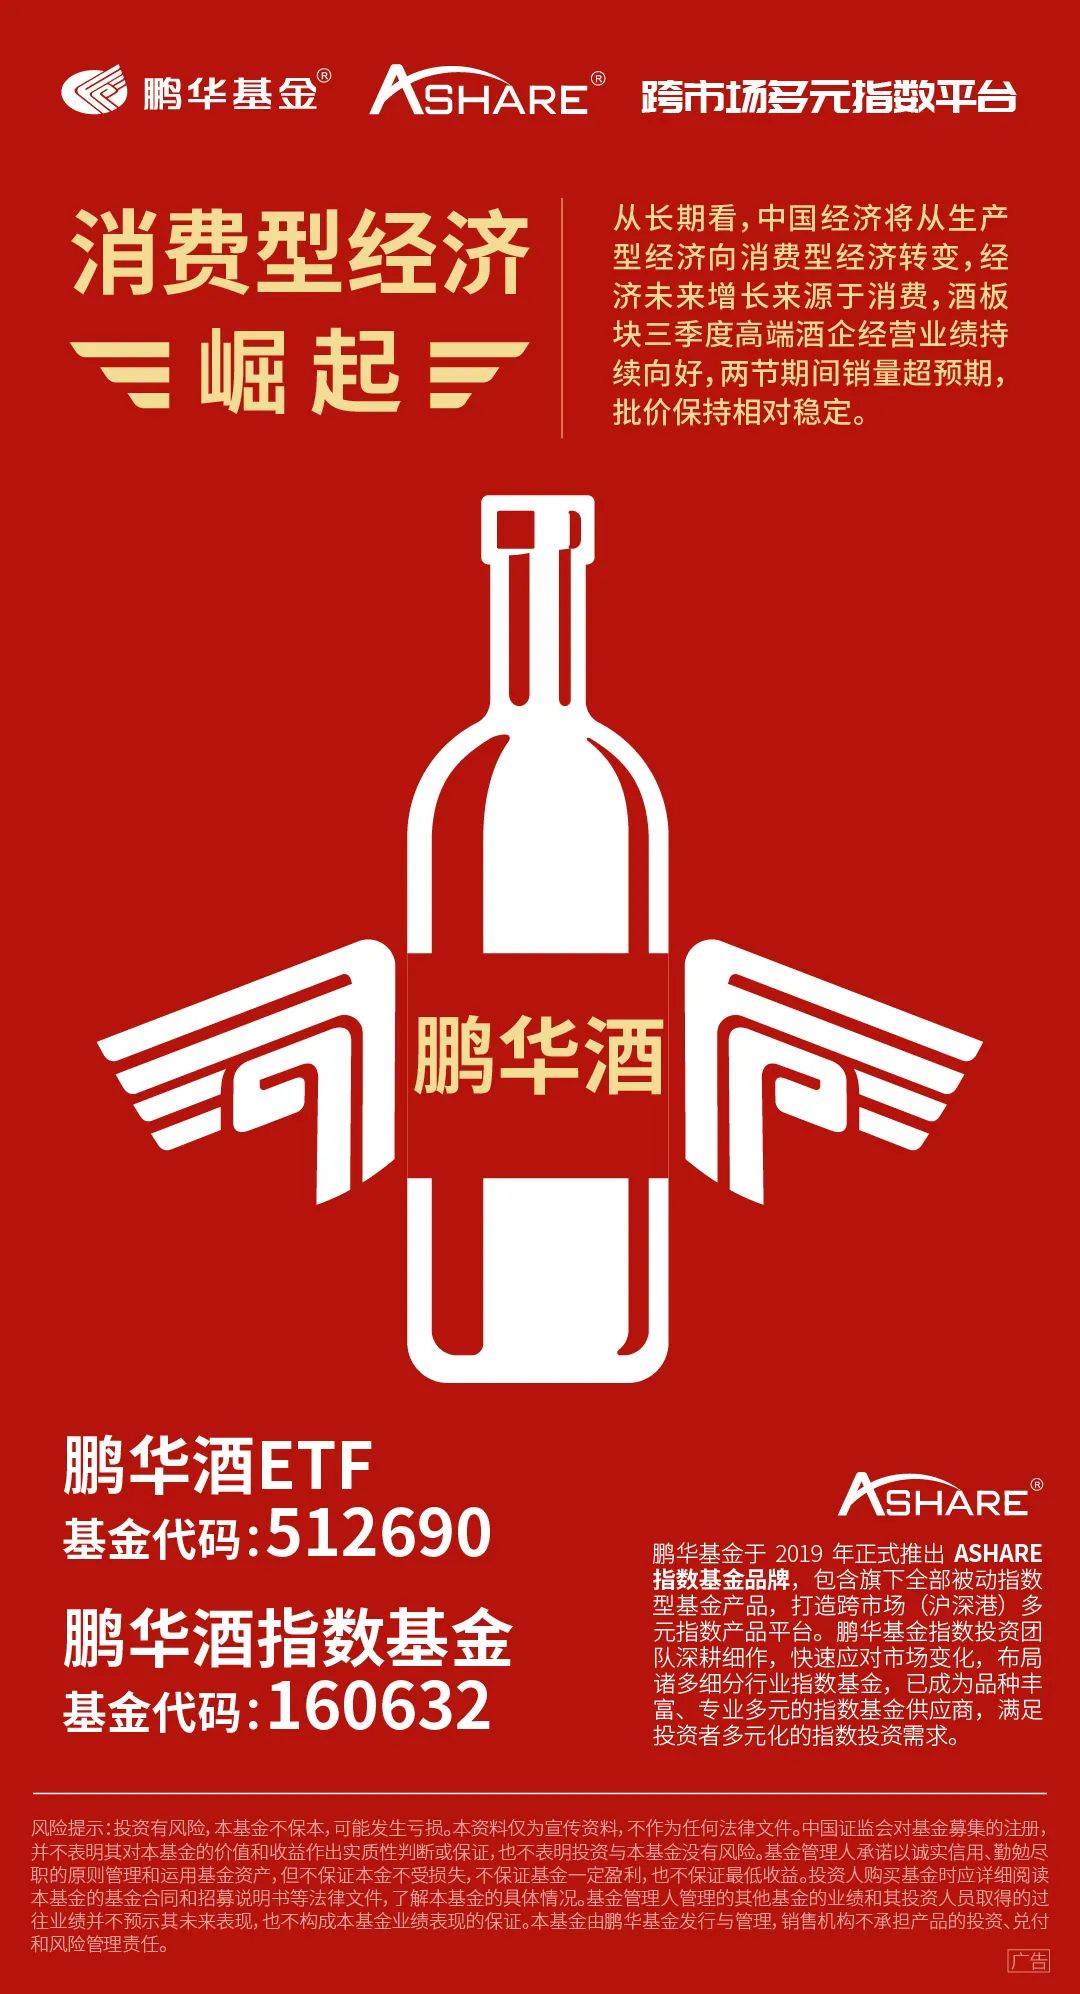 “鹏华Ashare指数大咖说 | 张羽翔：白酒行业发展长期趋势向好